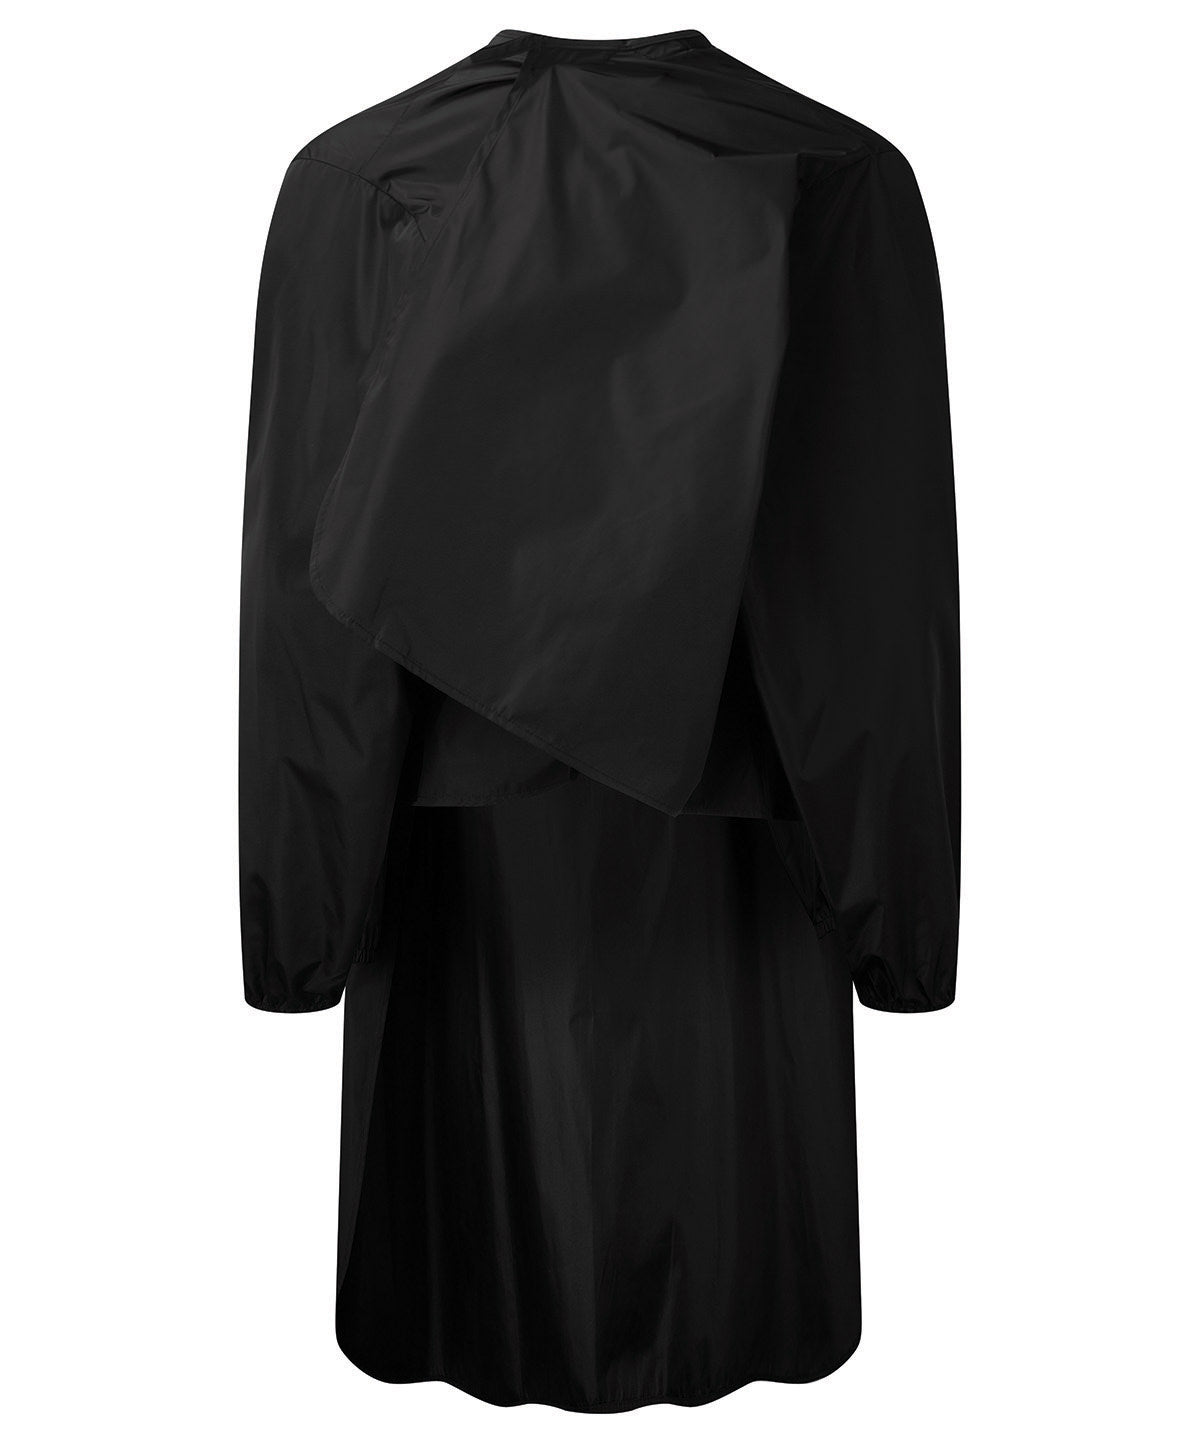 Salon Gown Long Sleeve Waterproof